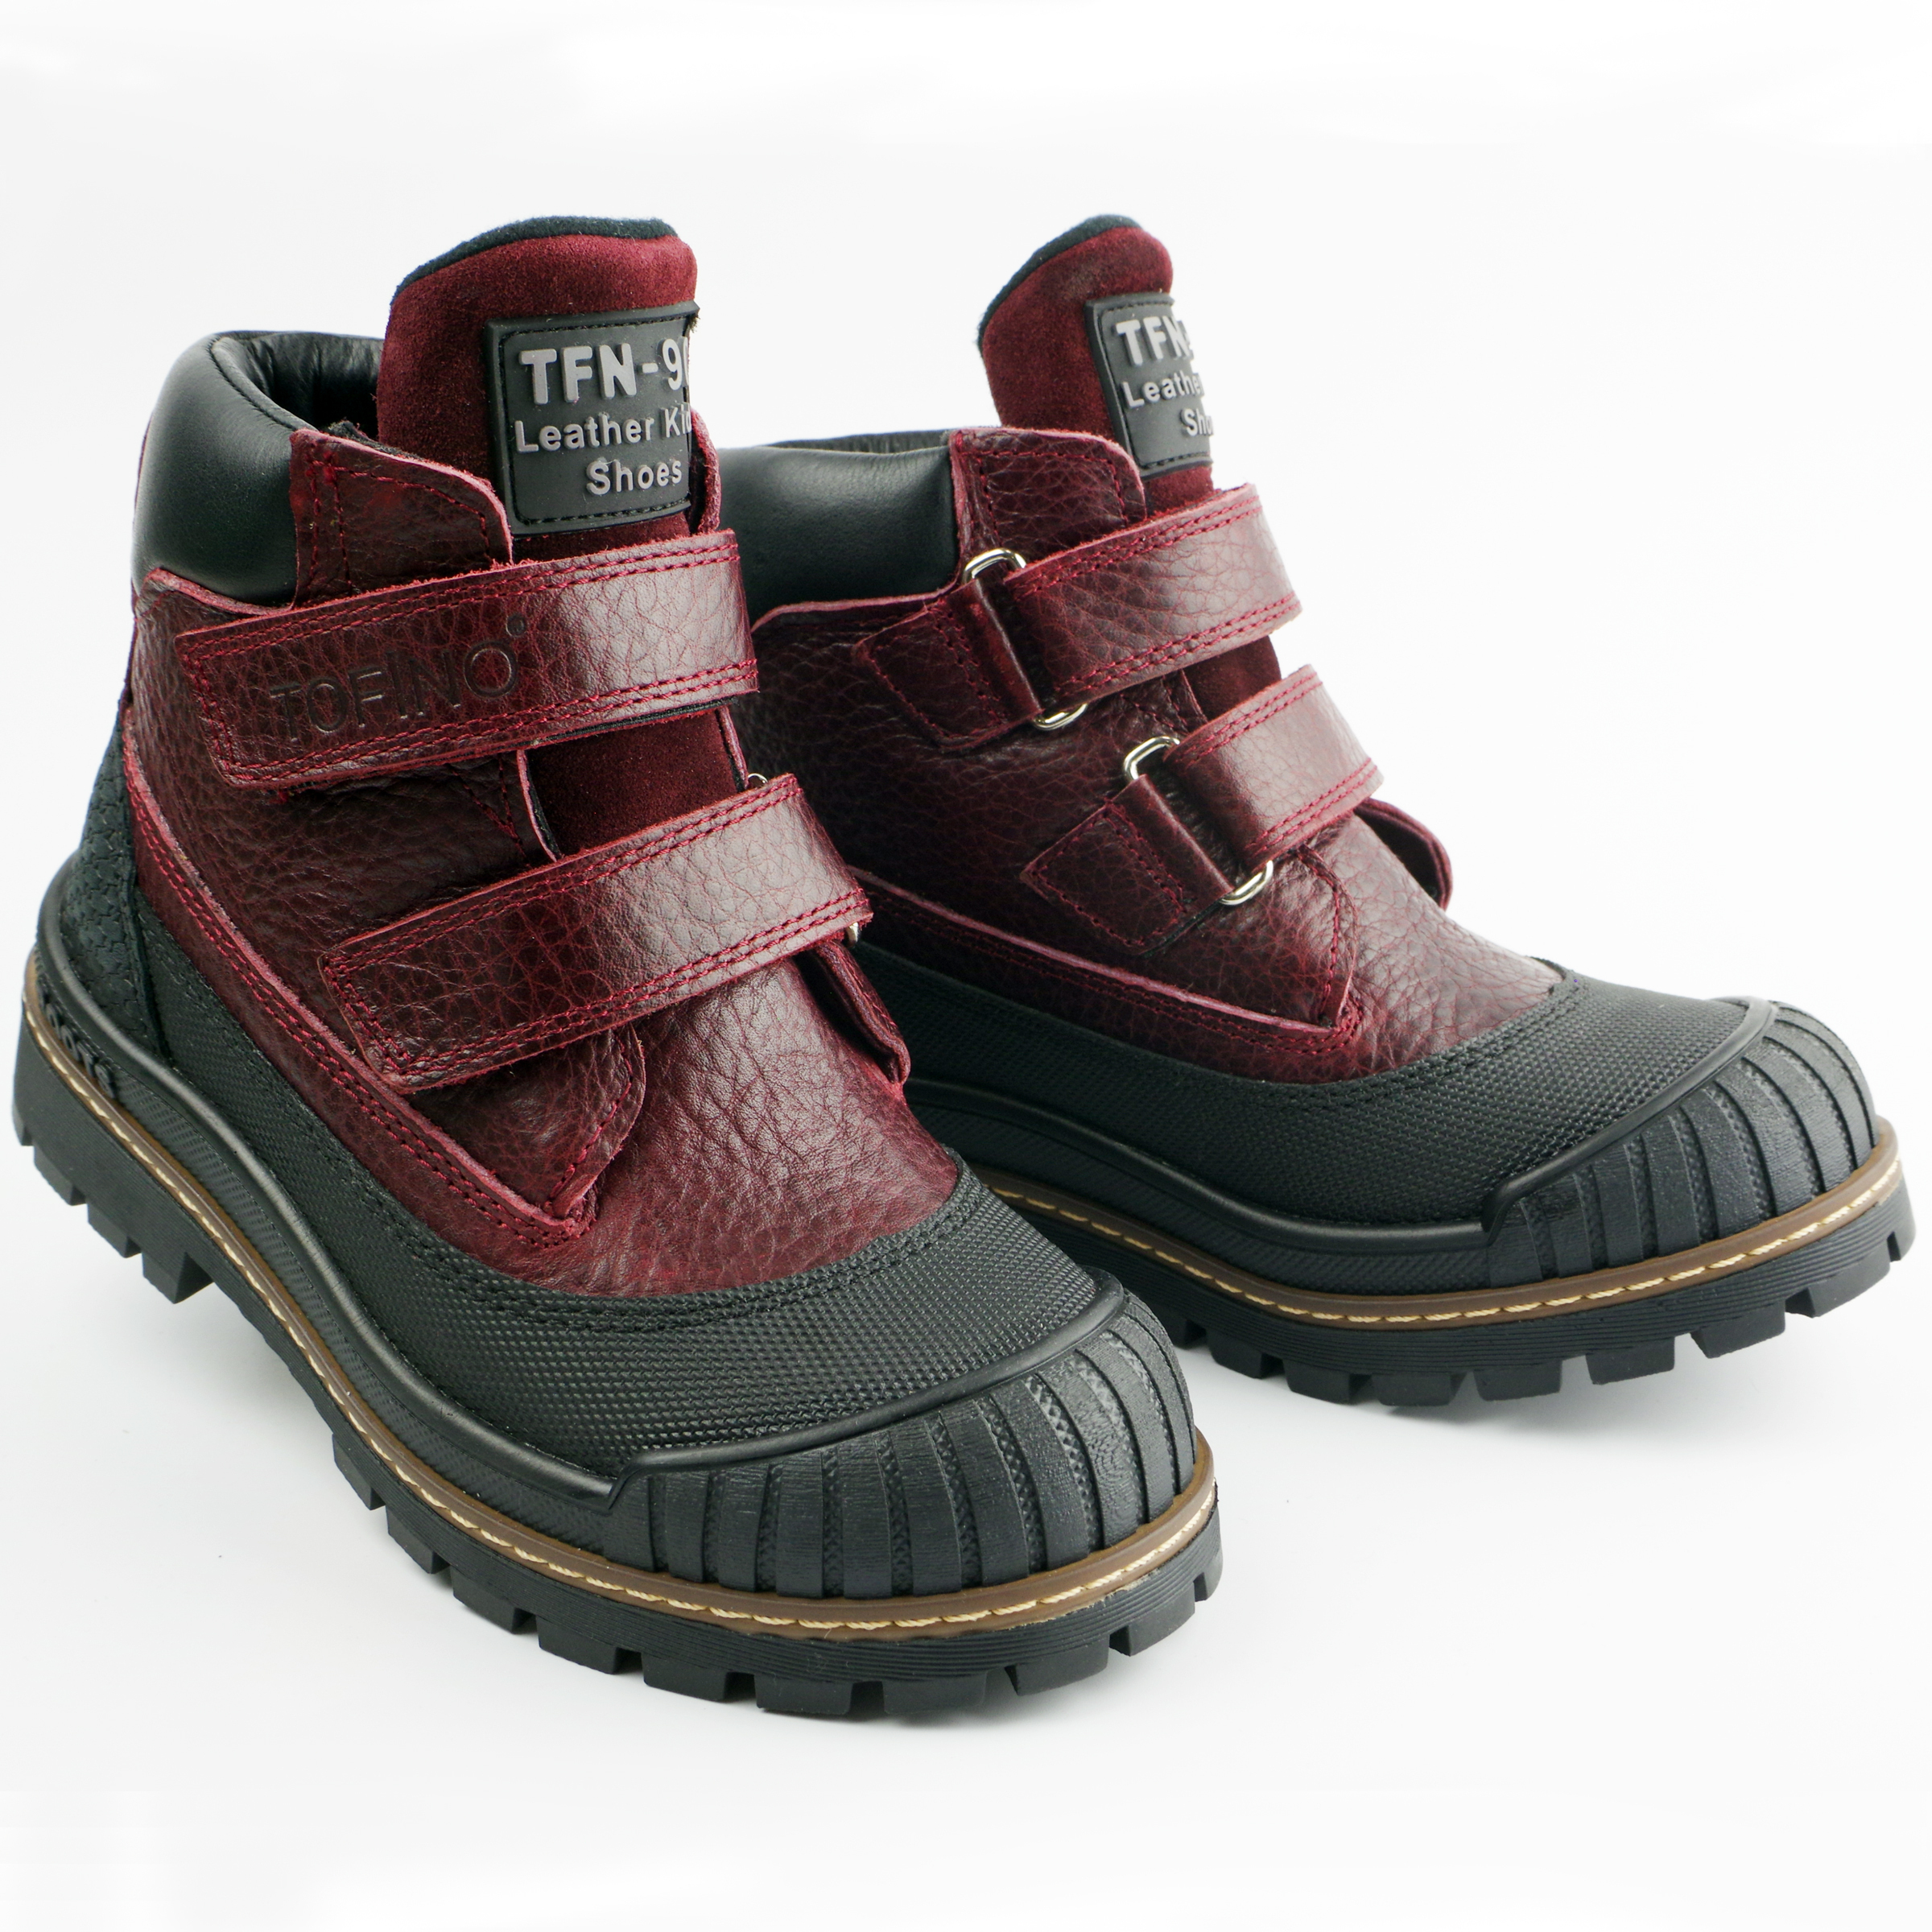 Демисезонные ботинки (2149) материал Нубук, цвет Бордовый  для девочки 31-36 размеры – Sole Kids. Фото 2